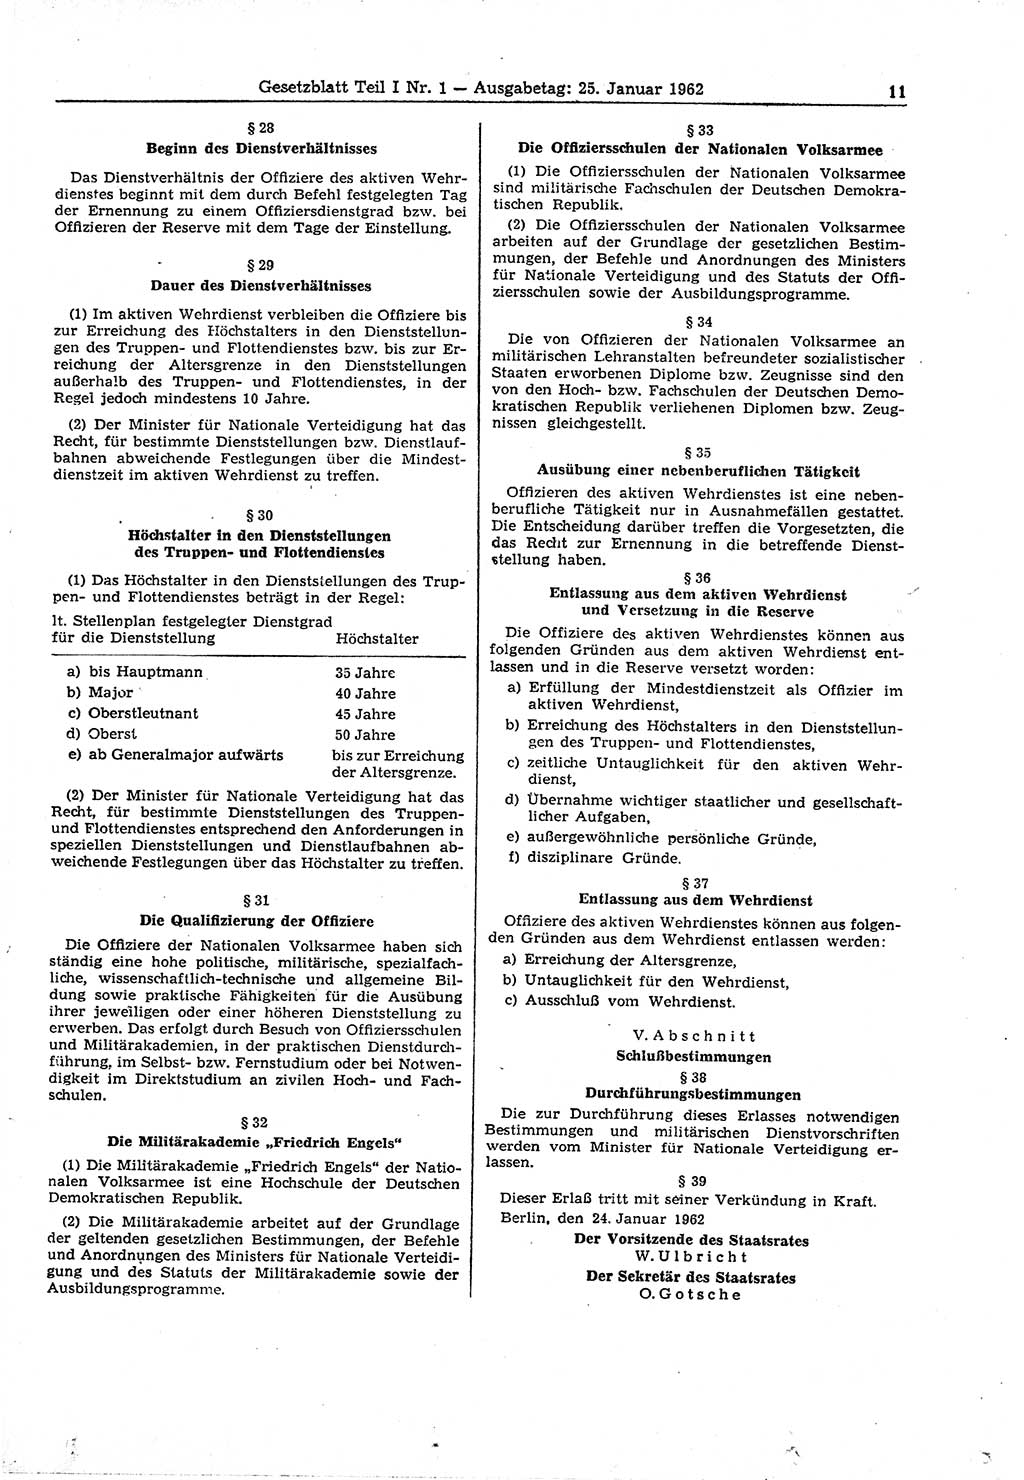 Gesetzblatt (GBl.) der Deutschen Demokratischen Republik (DDR) Teil Ⅰ 1962, Seite 11 (GBl. DDR Ⅰ 1962, S. 11)